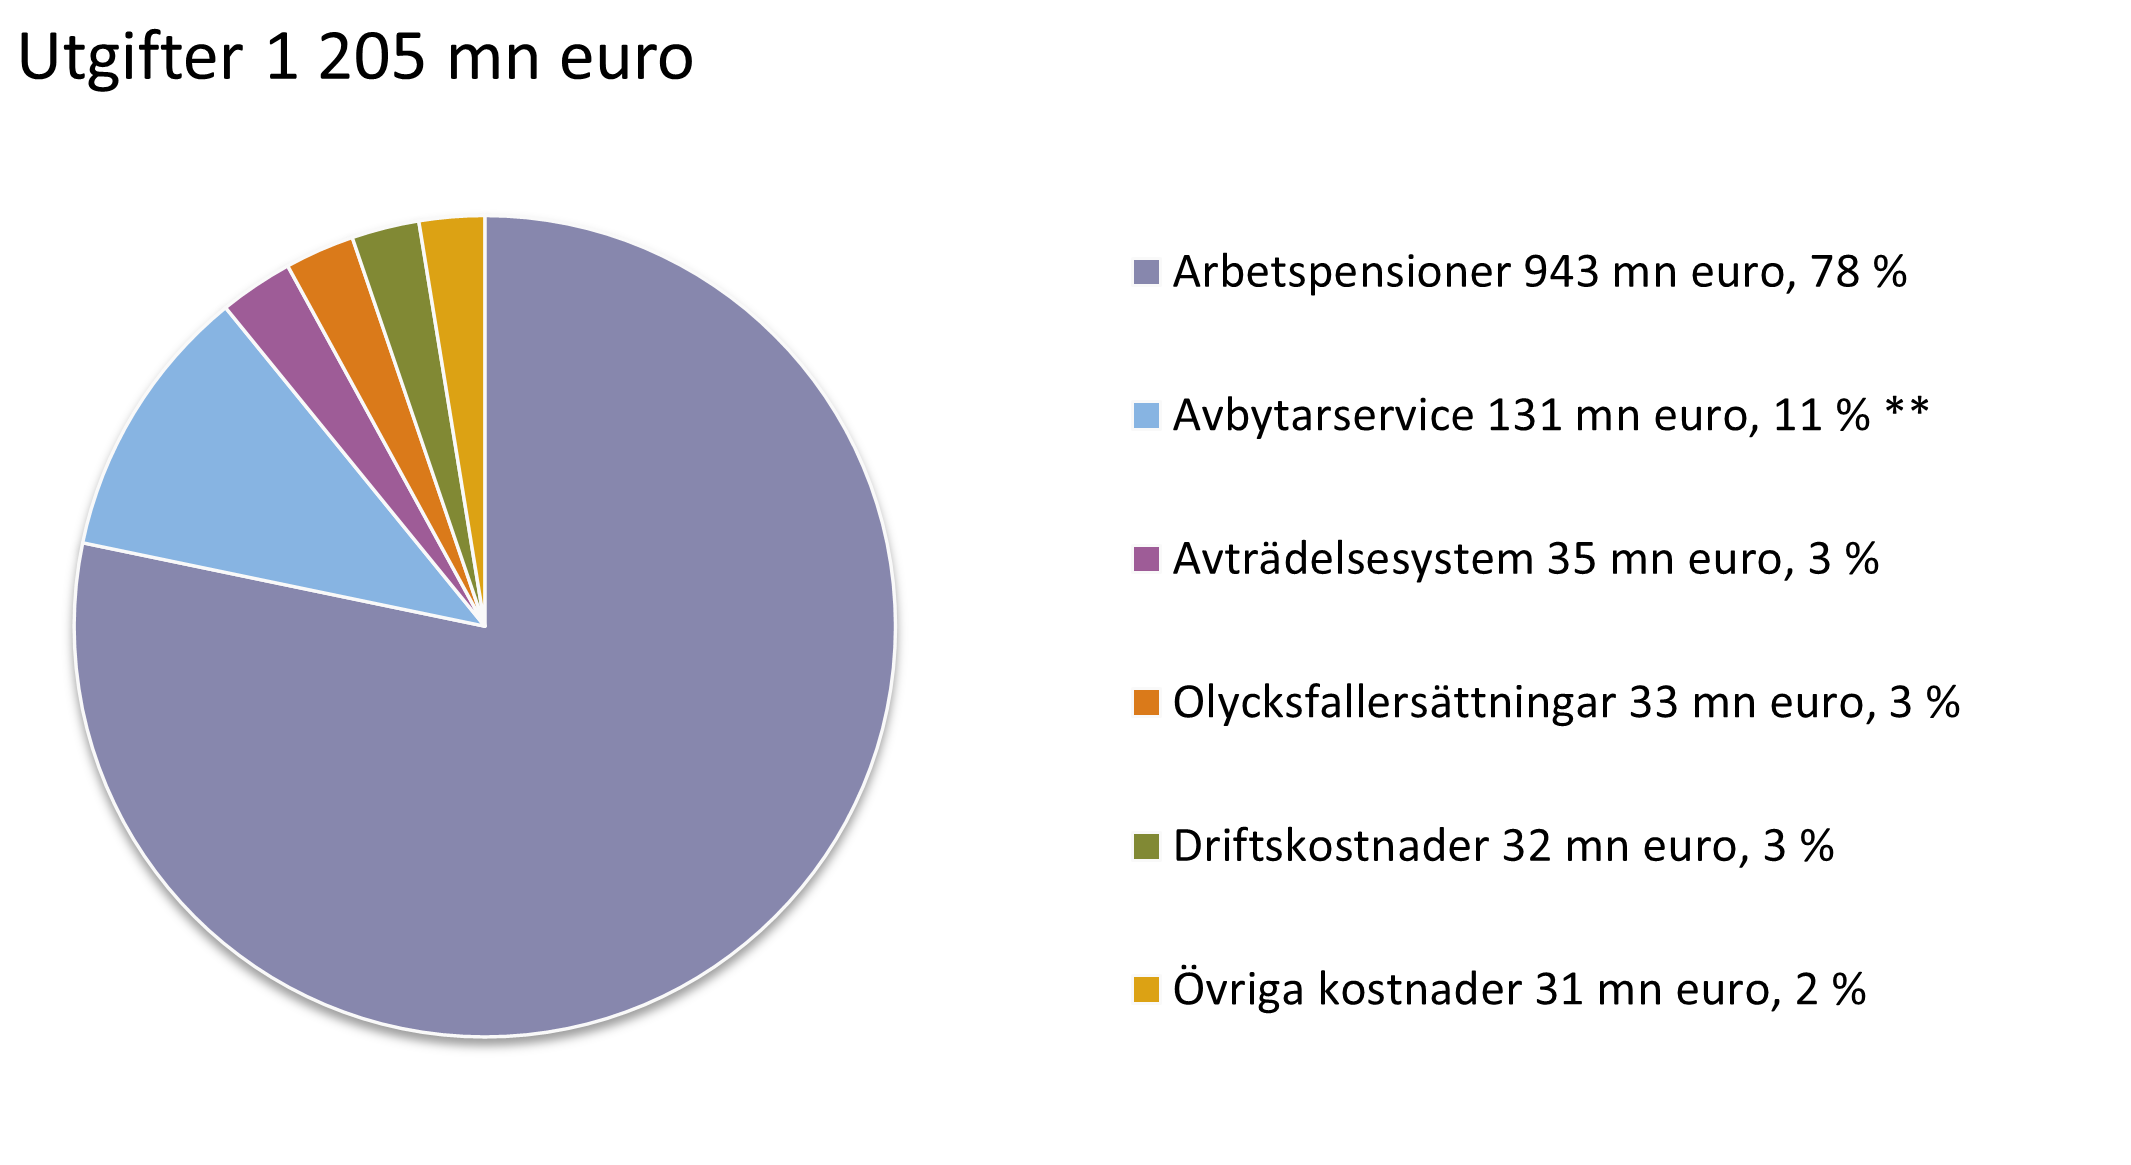 Utgifter 1 205 mn euro. Arbetspensioner 943 mn euro, 78 %. Avbytarservice 131 mn euro, 11 % **. Avträdelsesystem 35 mn euro, 3 %. Olycksfallersättningar 33 mn euro, 3 %. Driftskostnader 32 mn euro, 3 %. Övriga kostnader 31 mn euro, 2 %.